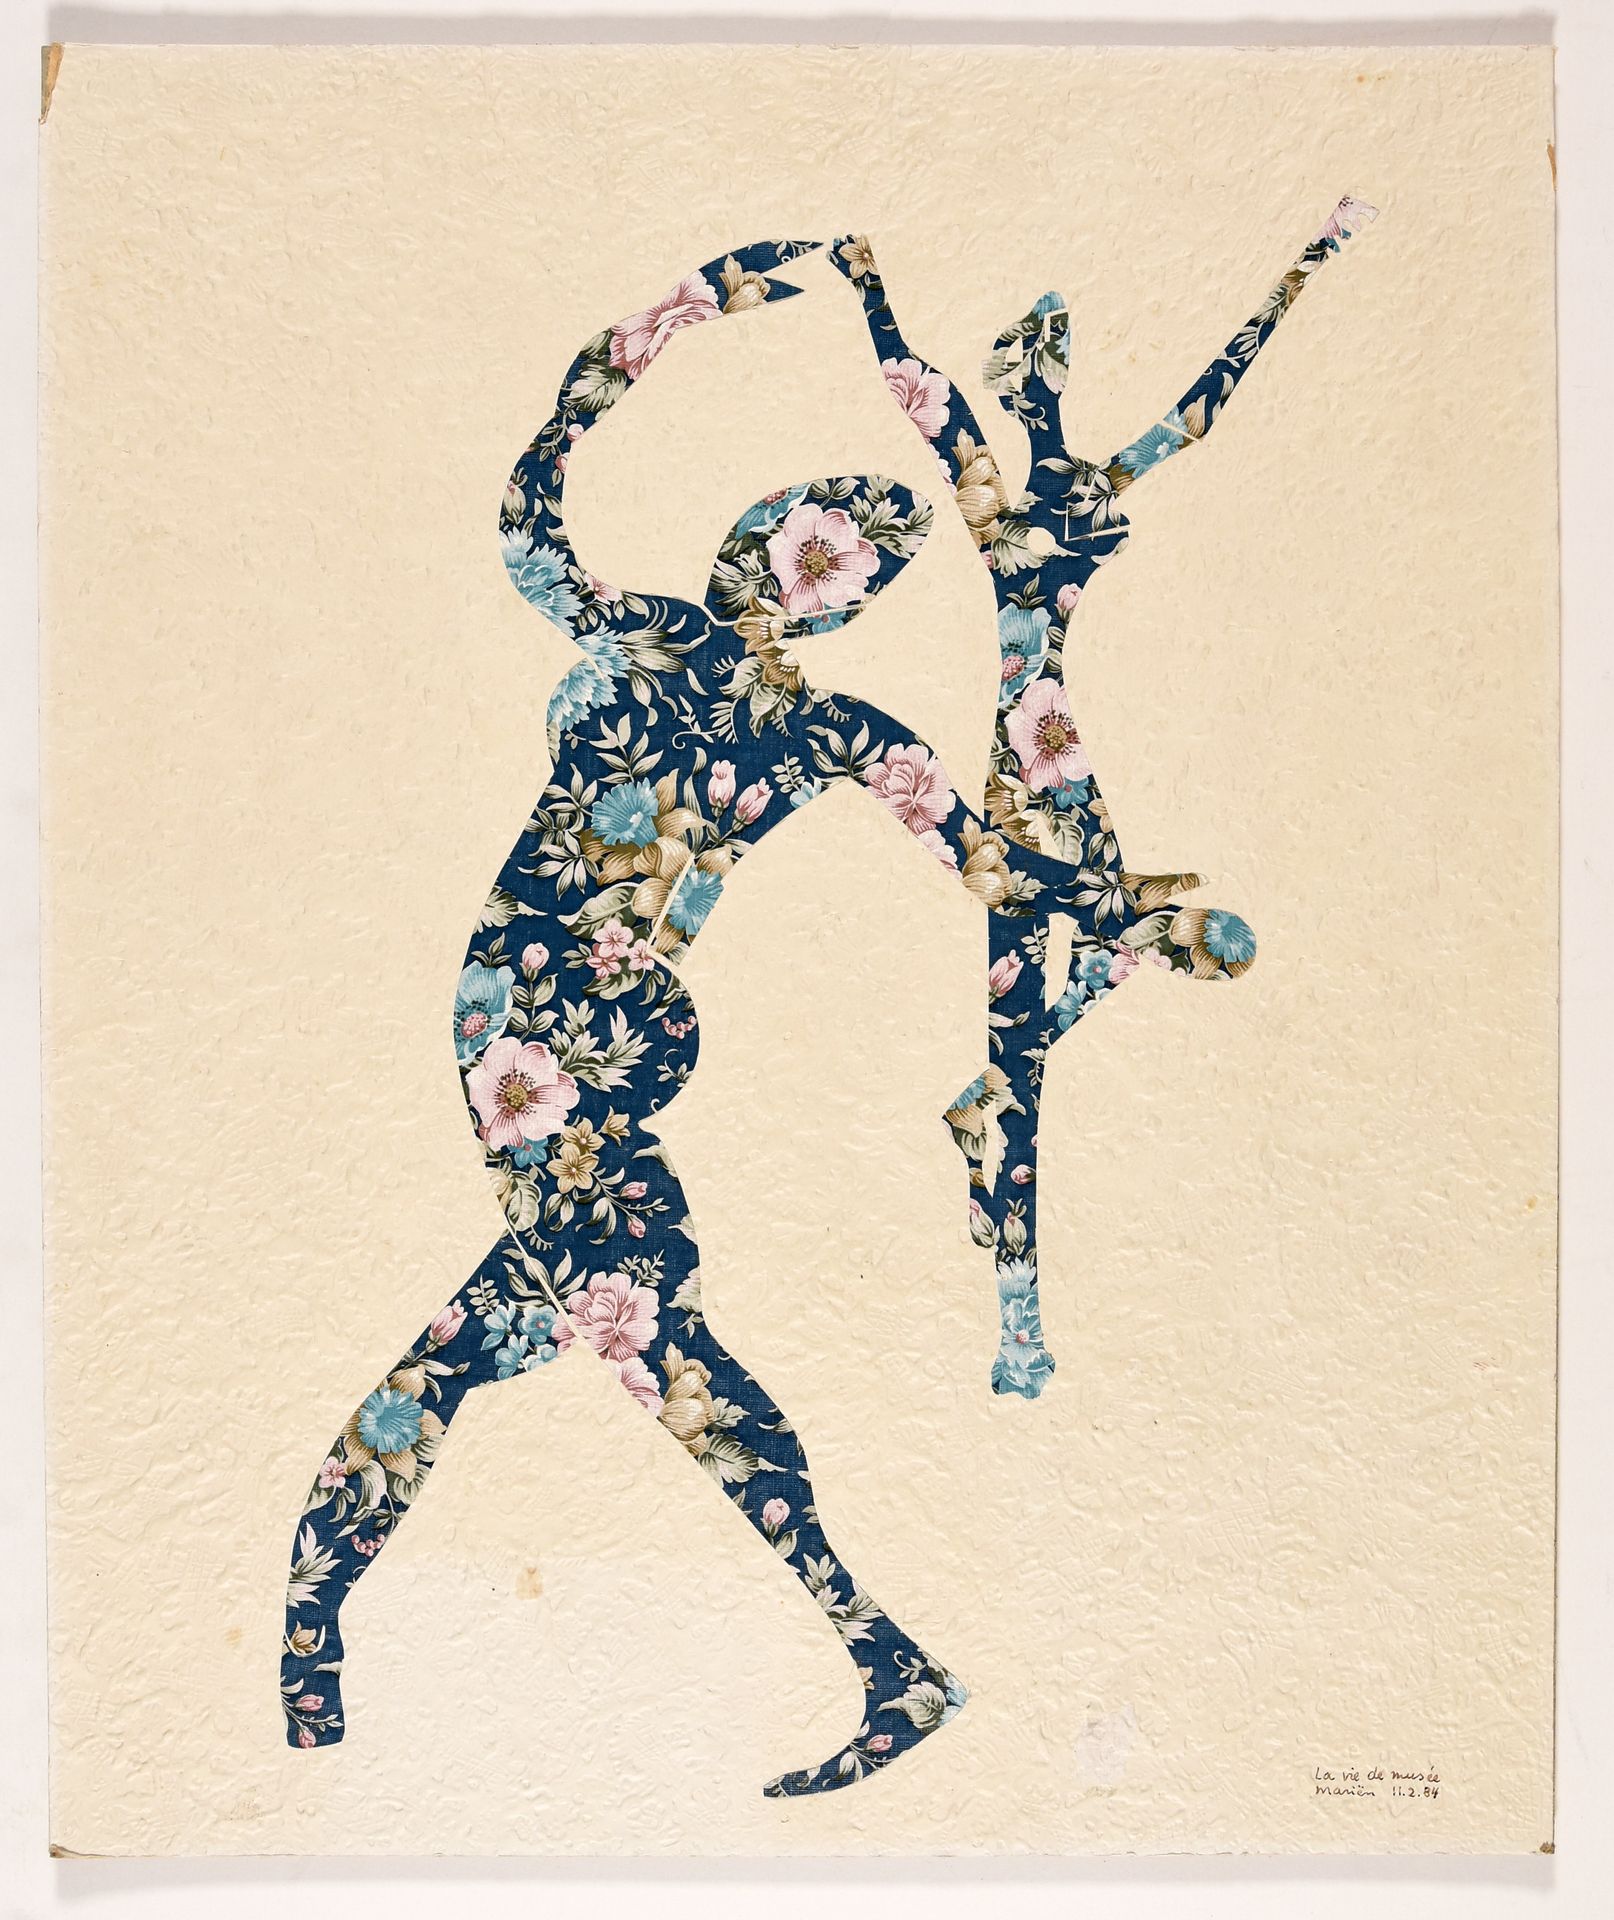 Mariën, Marcel MARIËN, Marcel La vie de musée.1984年 拼贴画，画纸安装在纸板上，50 x 50,5厘米；右下角&hellip;